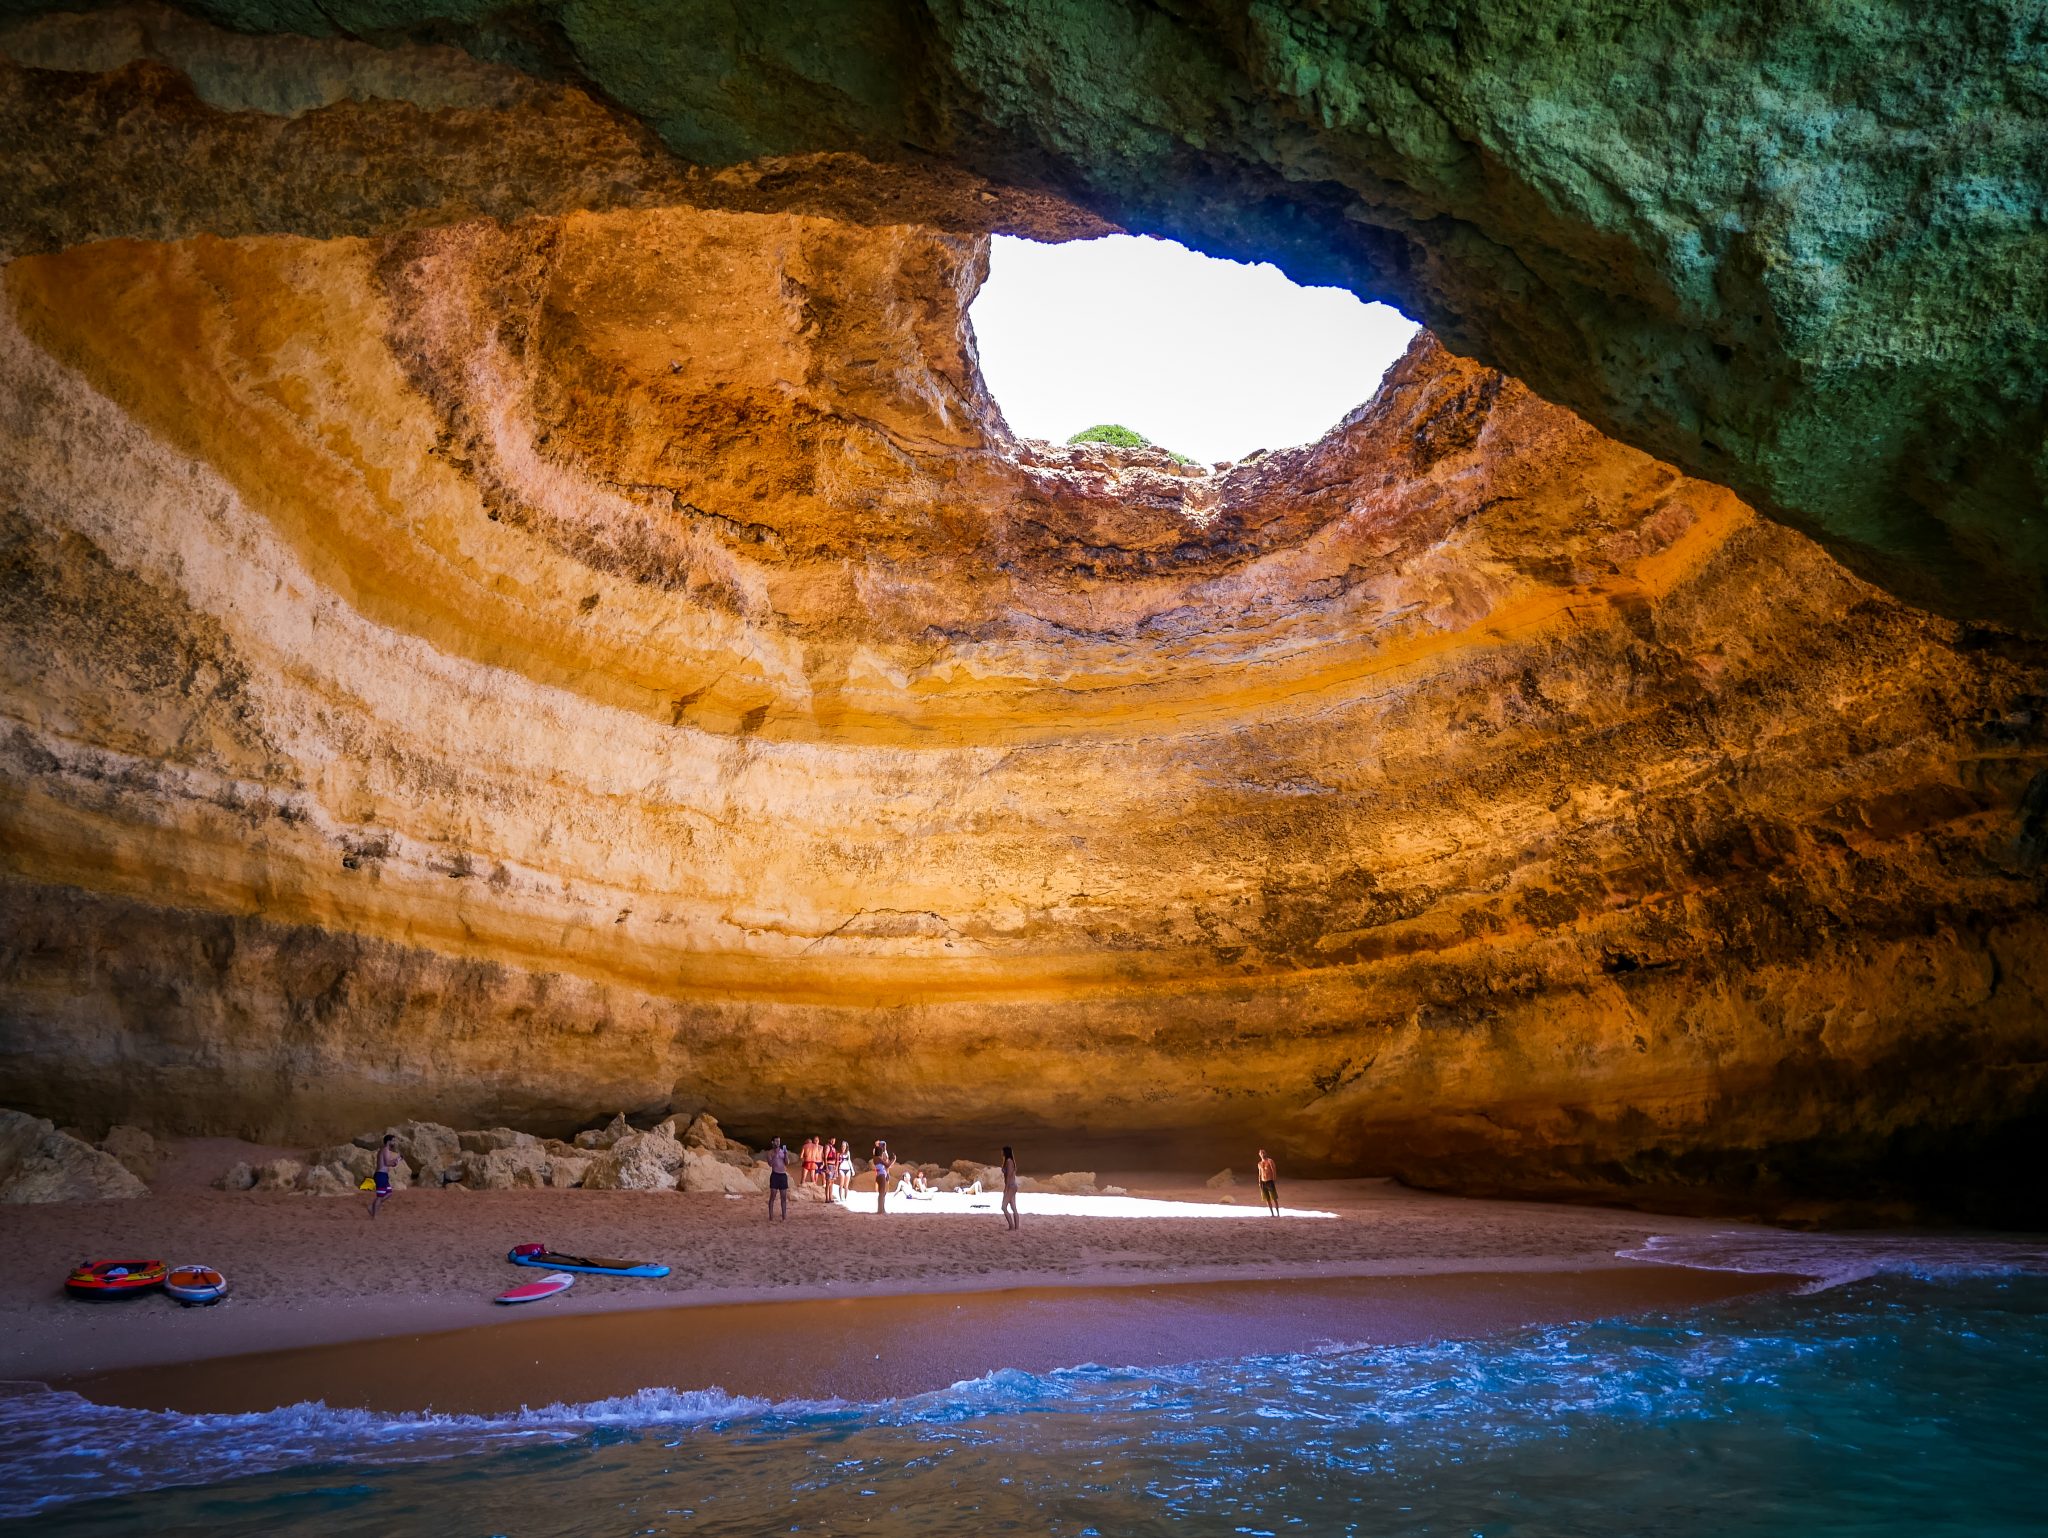 Viele schwimmen vom Strand zu der berühmten Höhle mit einer Luftmatratze oder einem Kayak.